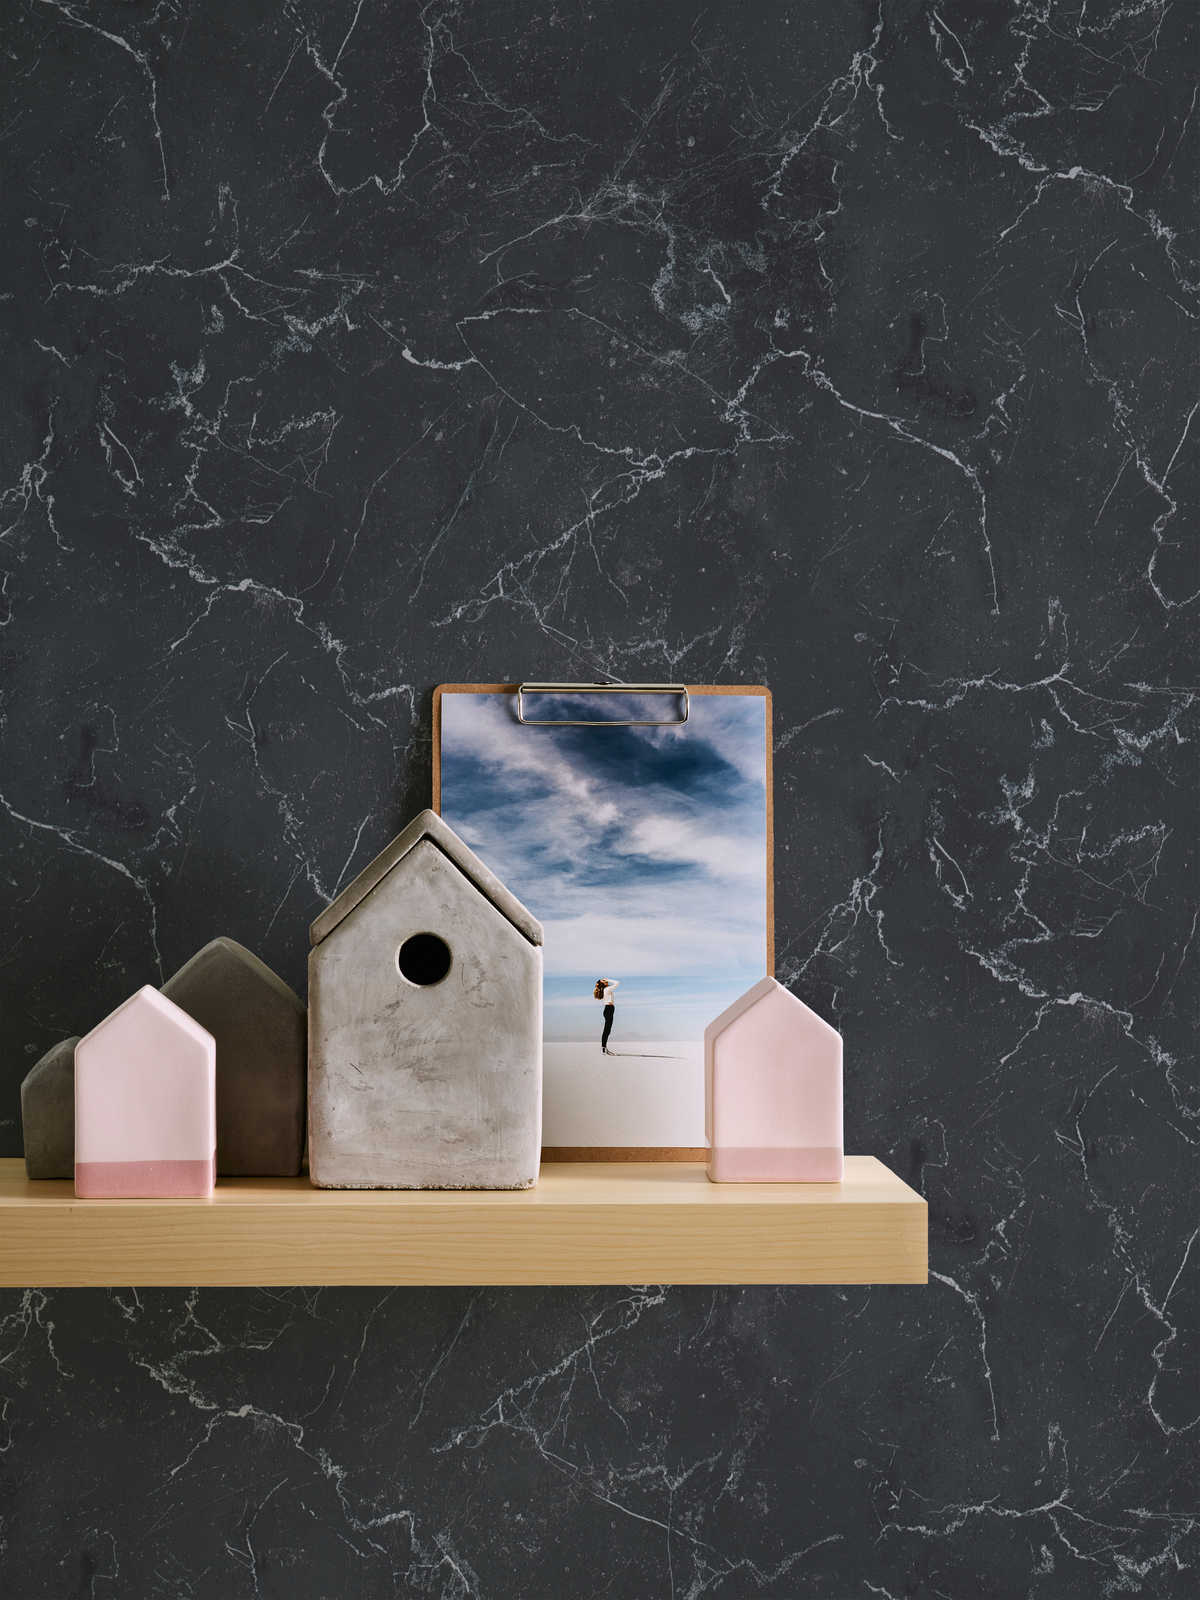             Papier peint intissé imitation marbre gris foncé, Design by MICHALSKY
        